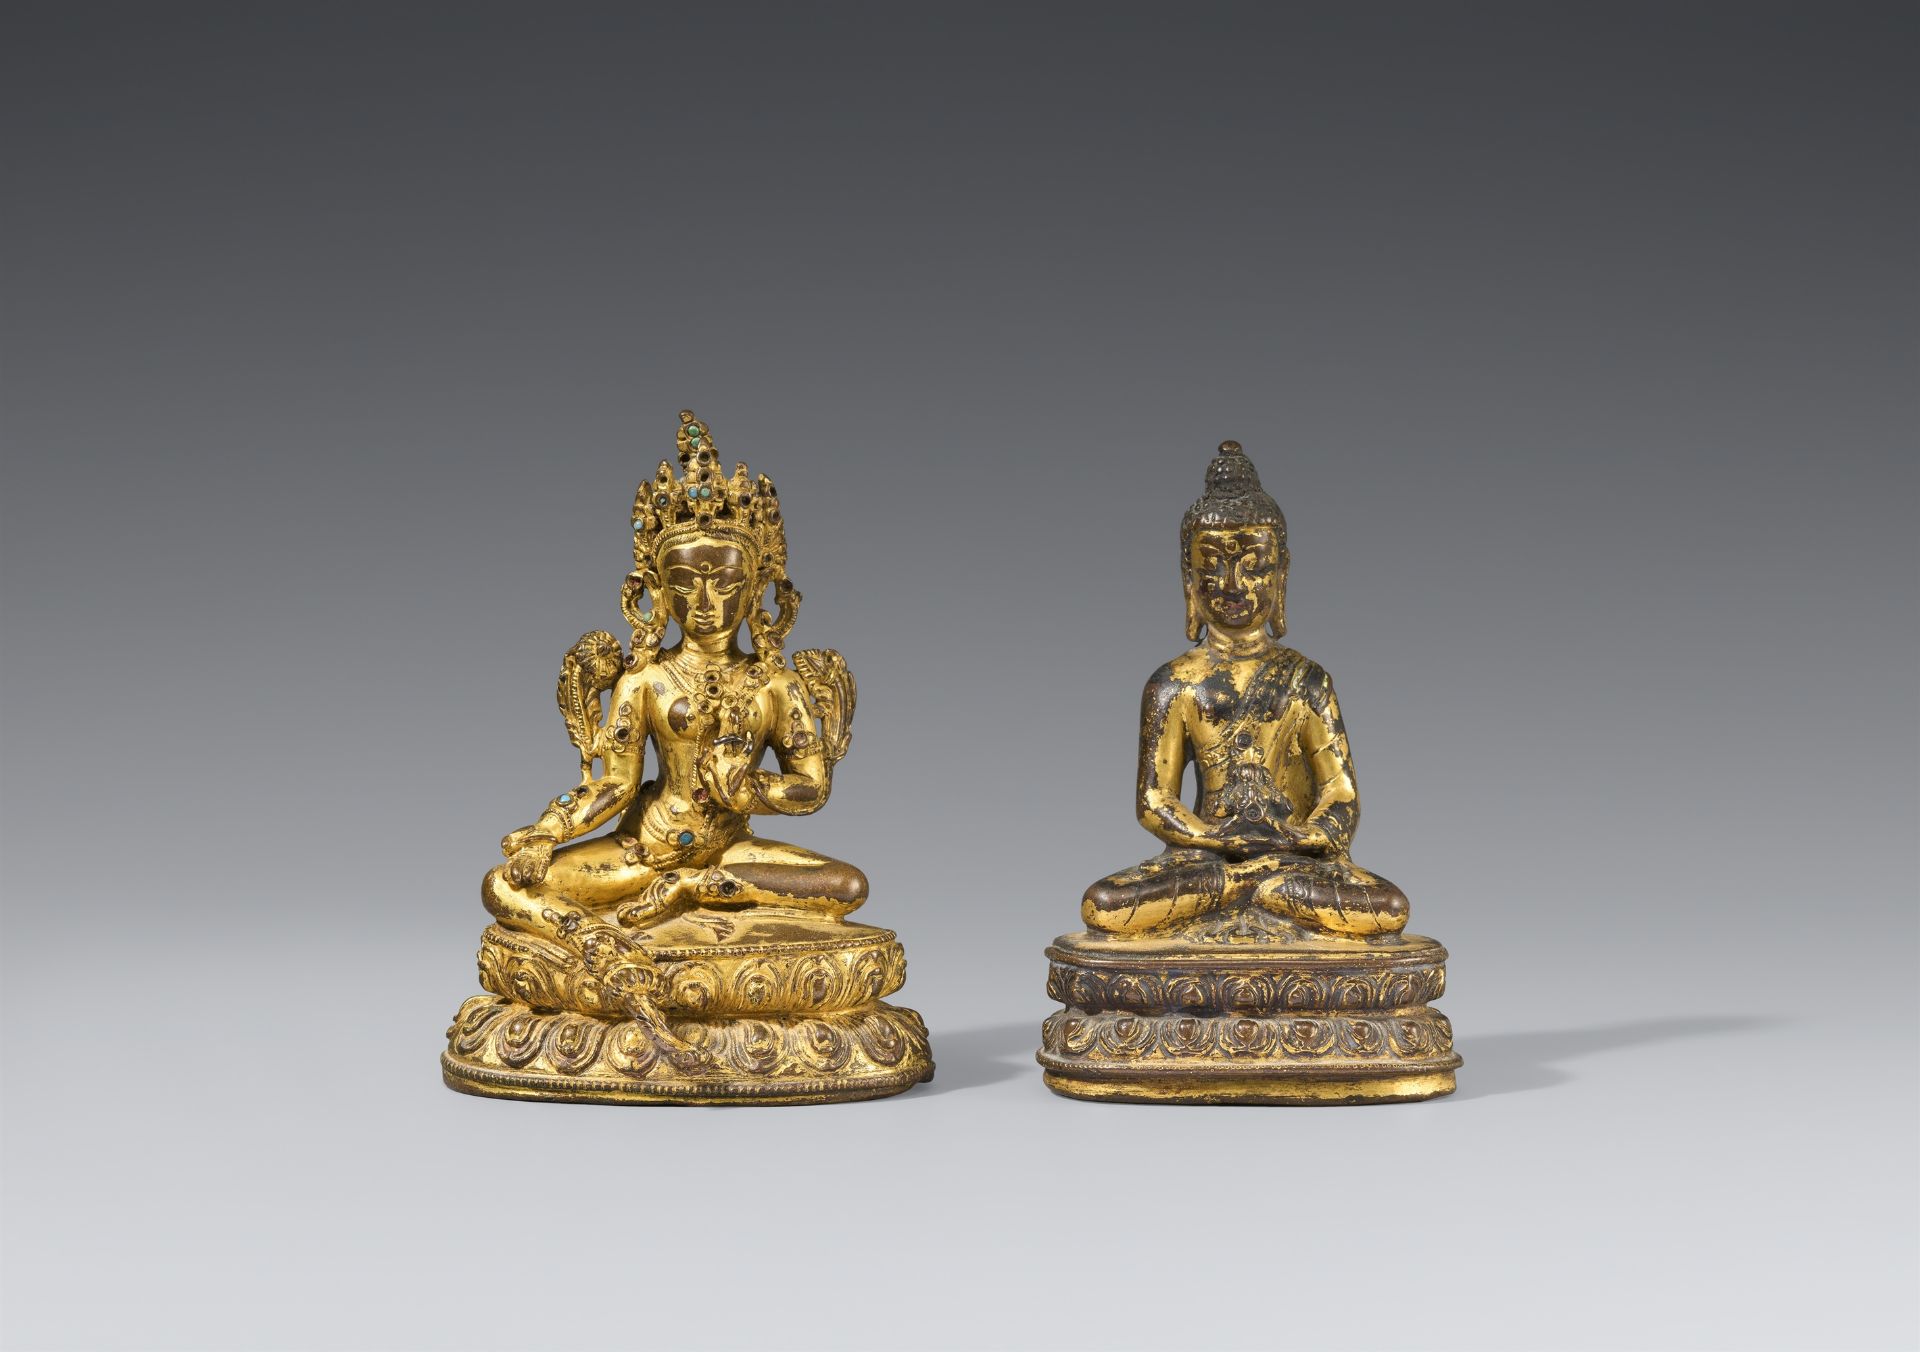 Figur des Buddha Shakyamuni und Figur der Shyamatara. Vergoldete Bronze. Tibet, 17. Jh. und 19. Jh.